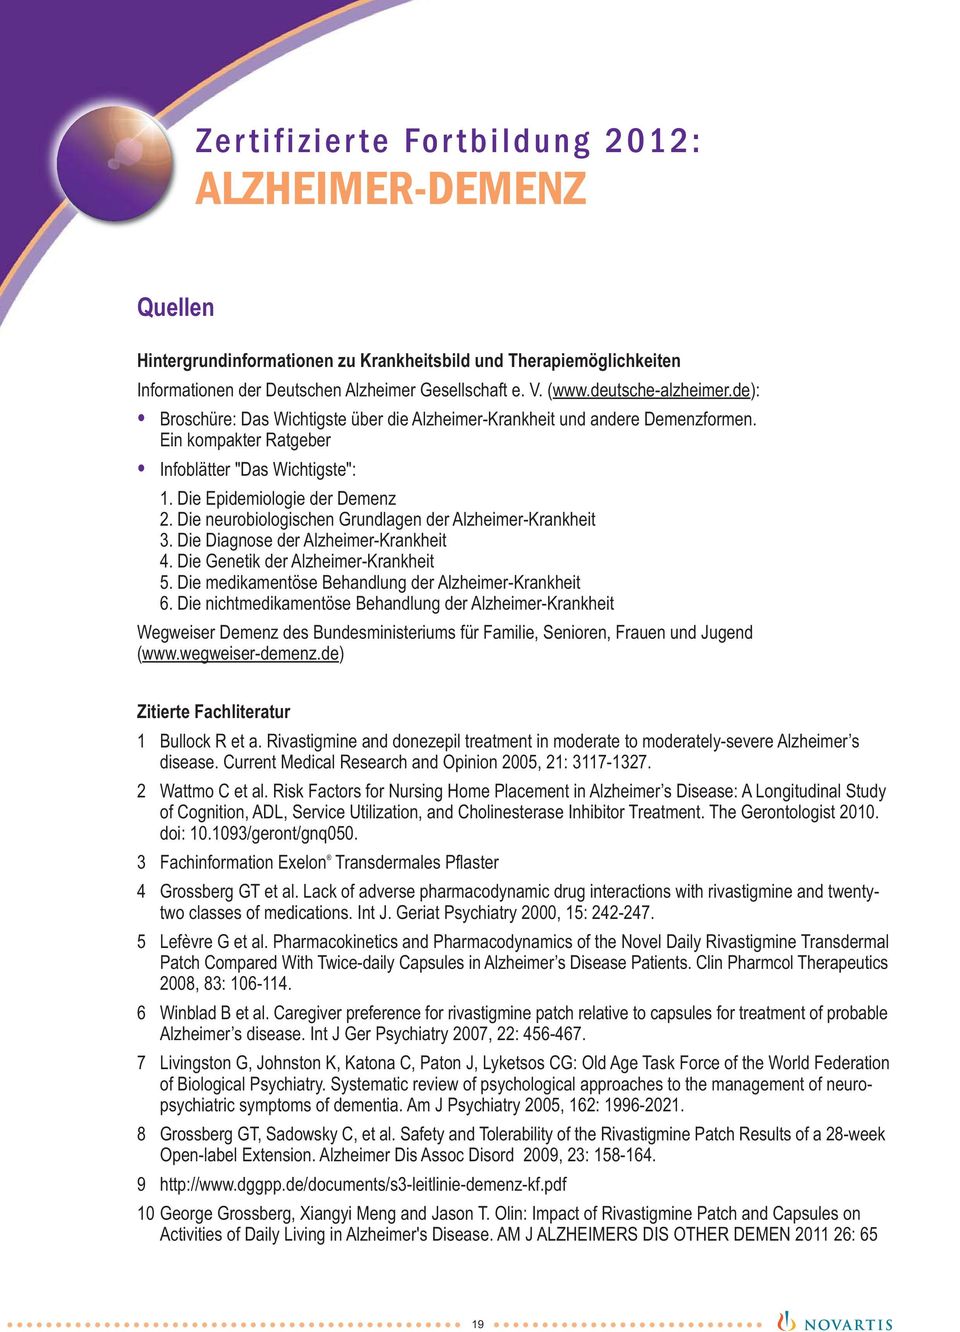 Die neurobiologischen Grundlagen der Alzheimer-Krankheit 3. Die Diagnose der Alzheimer-Krankheit 4. Die Genetik der Alzheimer-Krankheit 5. Die medikamentöse Behandlung der Alzheimer-Krankheit 6.